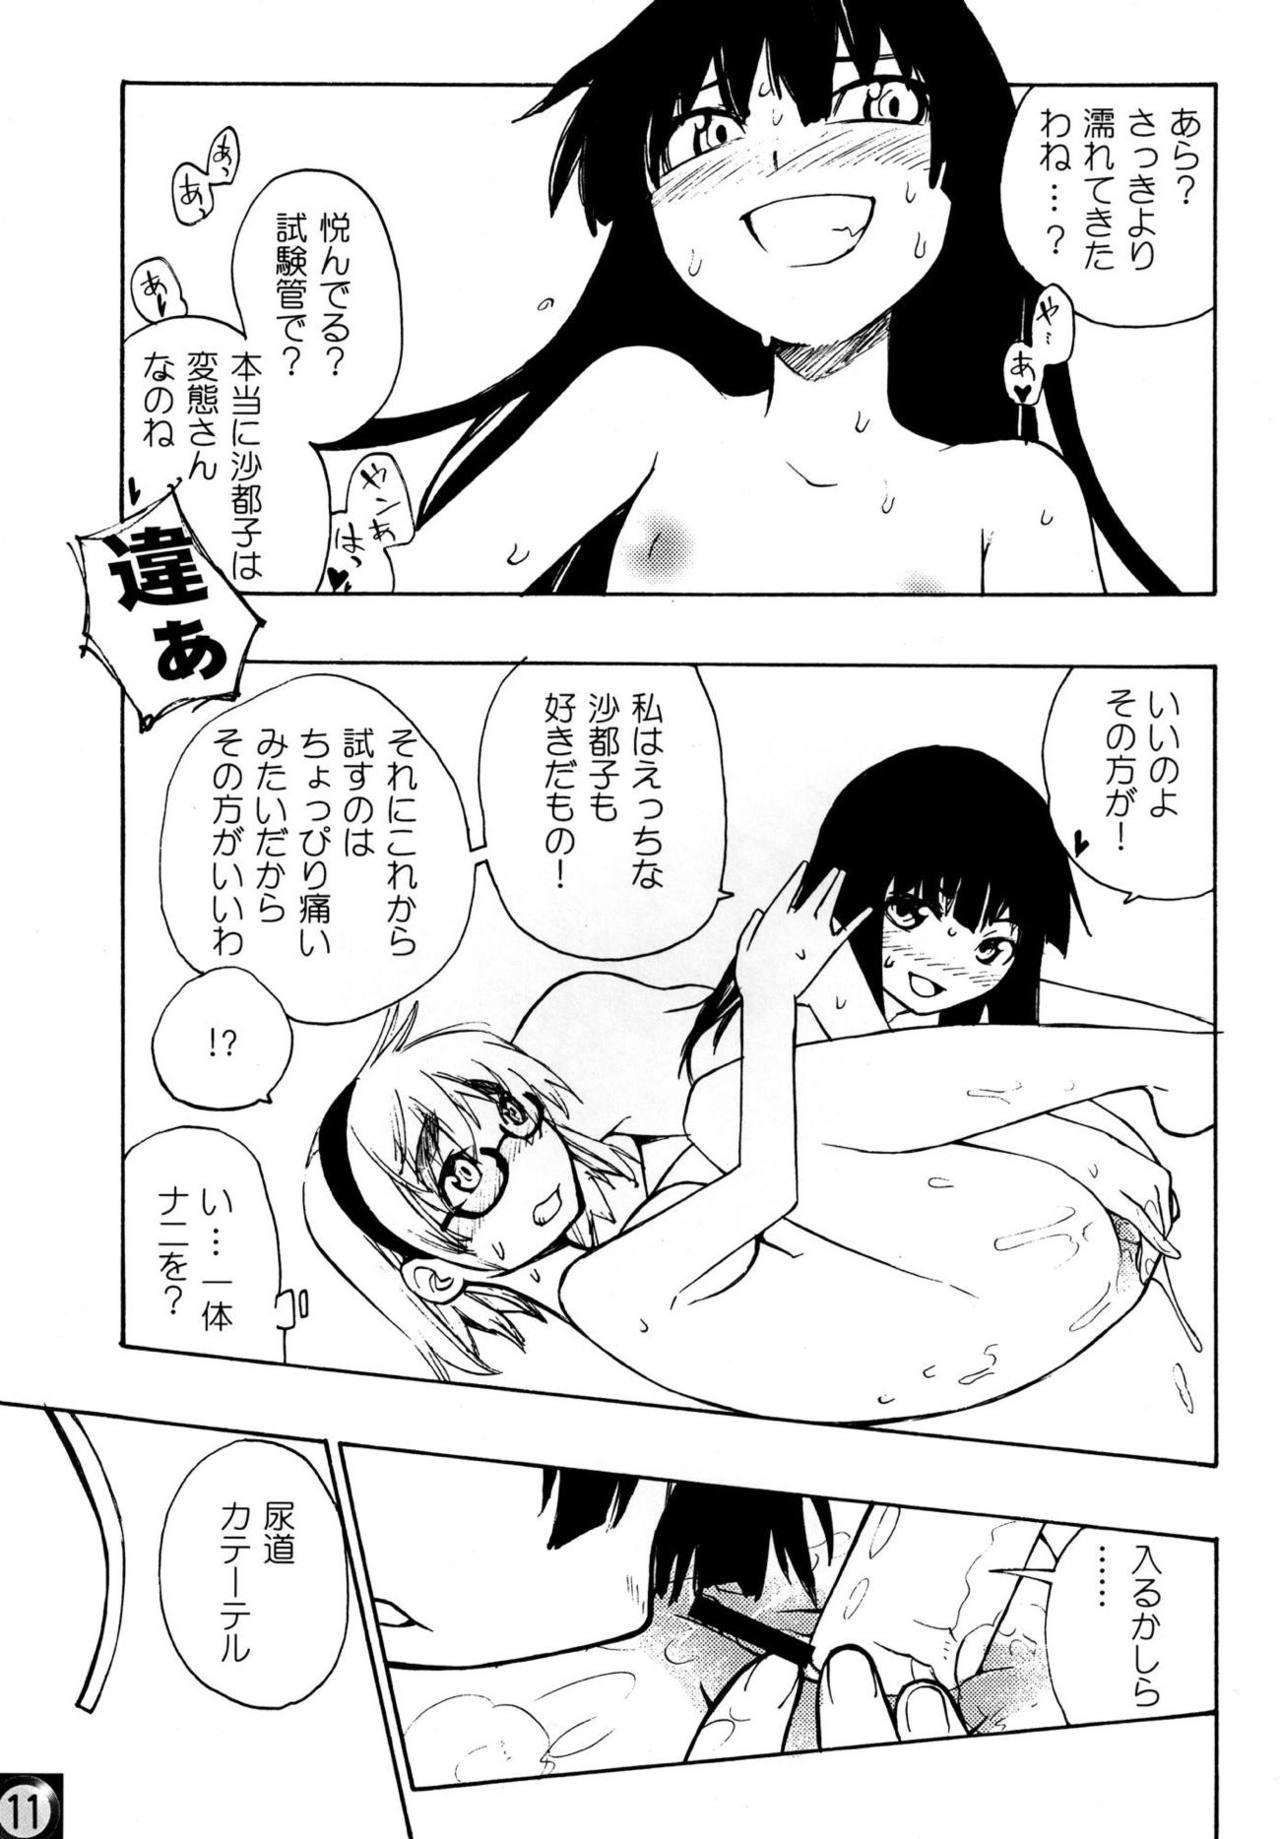 Cogida Ecchi ja Nai to Ikenai to Omoimasu!! - Higurashi no naku koro ni Gay Interracial - Page 10